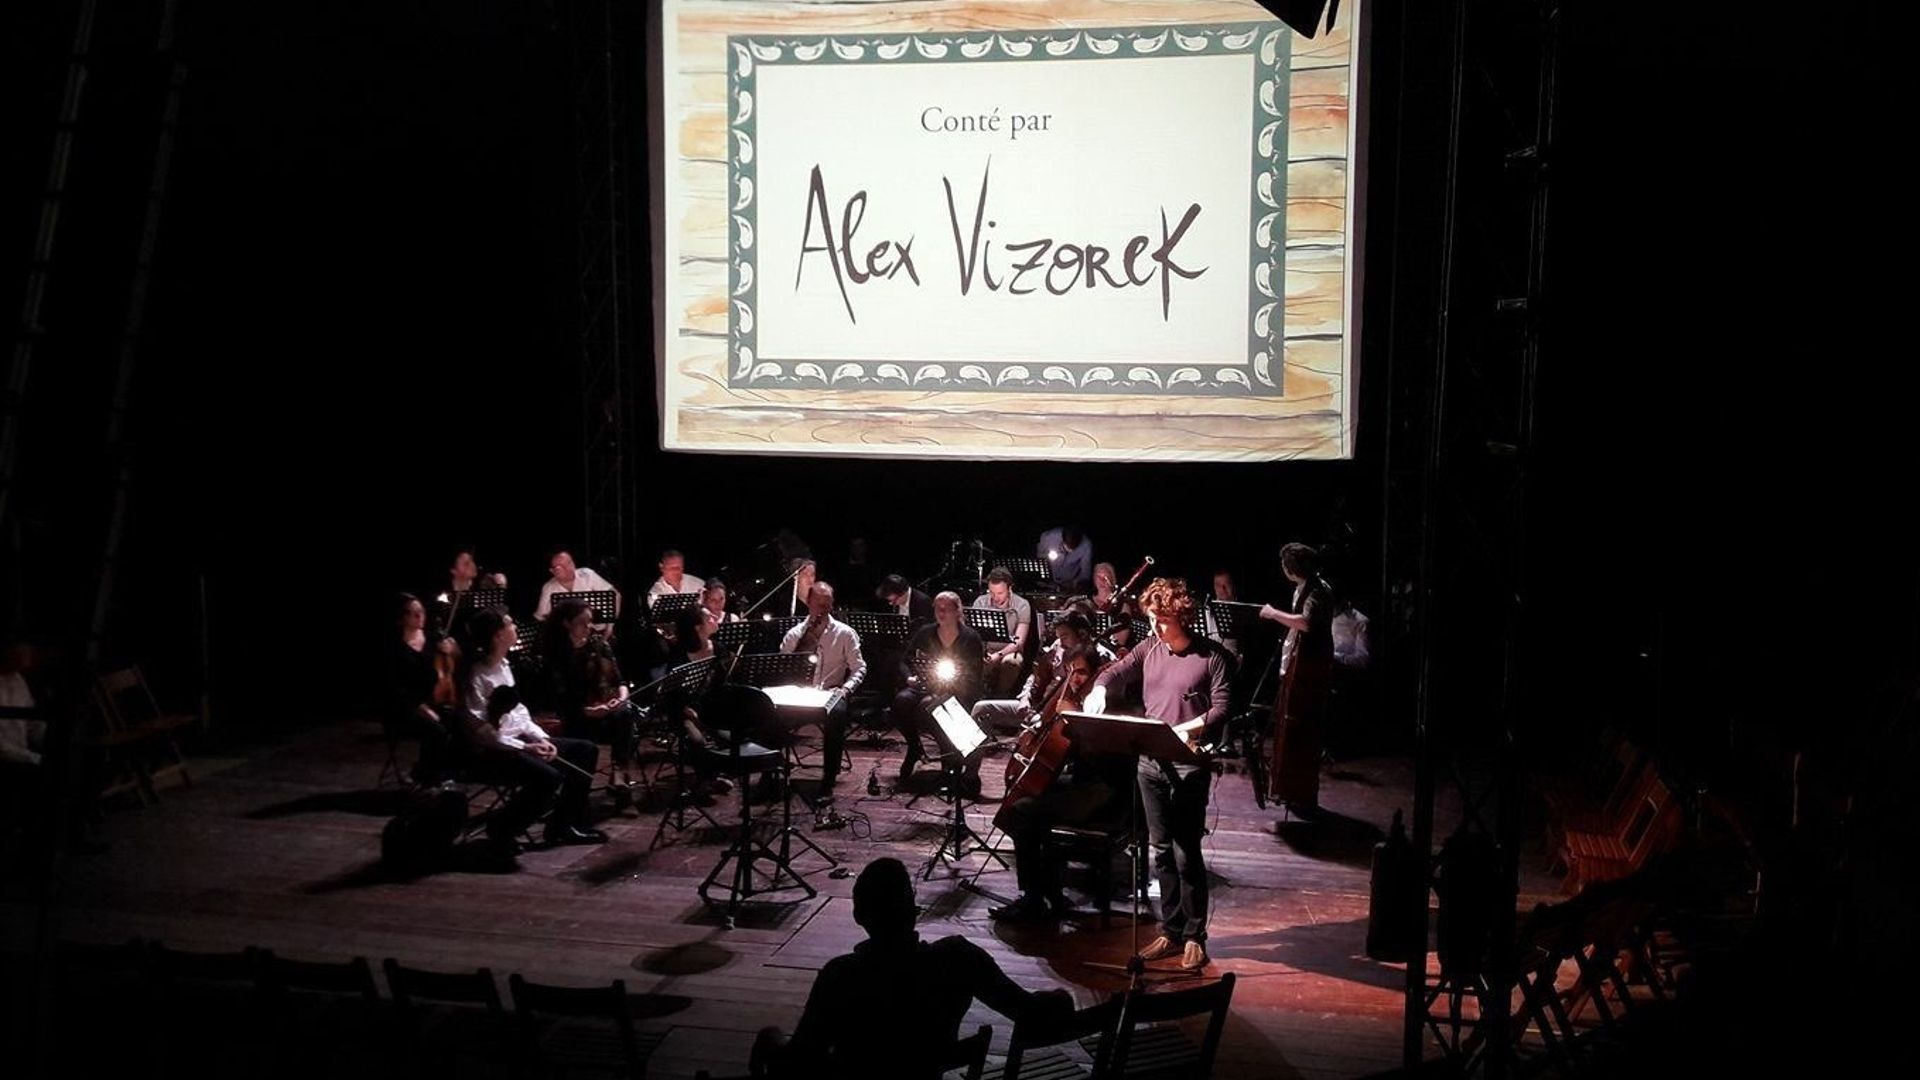 Le spectacle « Pierre & le Loup ». Un conte musical indémodable, éclairé par la voix et l’humour d’Alex Vizorek